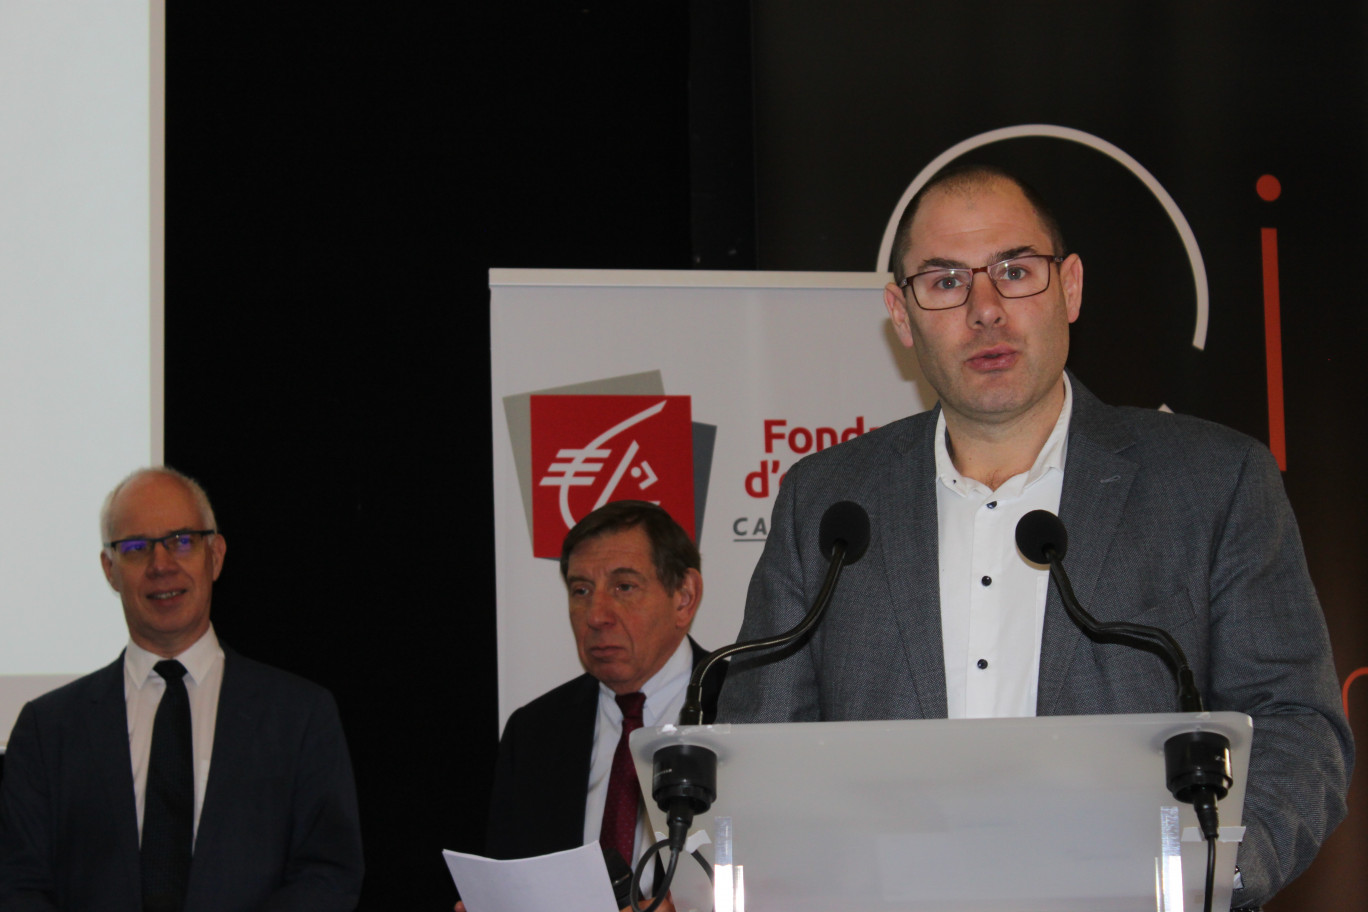 Le représentant d’APF France handicap Calais, lauréat "Coup de Cœur".